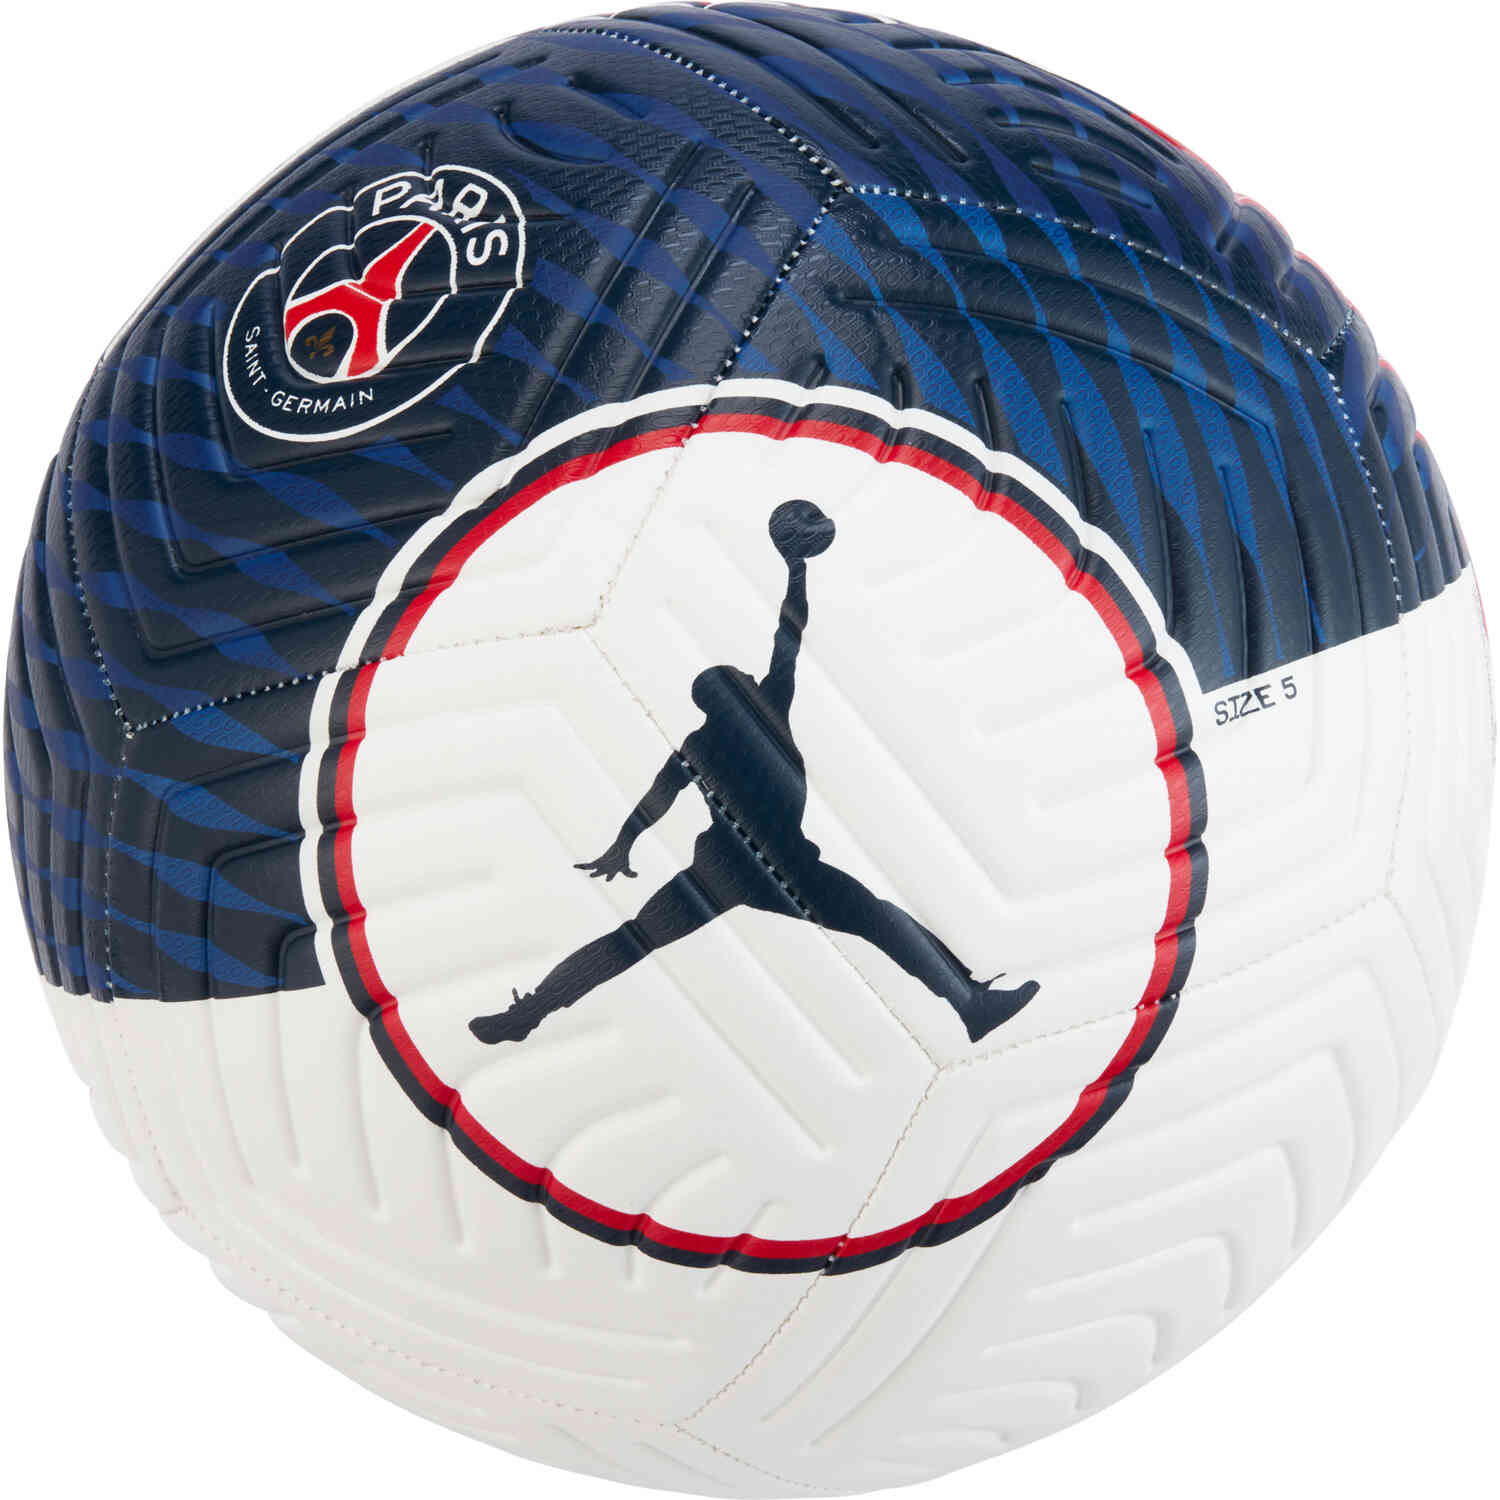 Jordan PSG Strike Training Soccer Ball - White & University Red with Midnight  Navy - Soccer Master